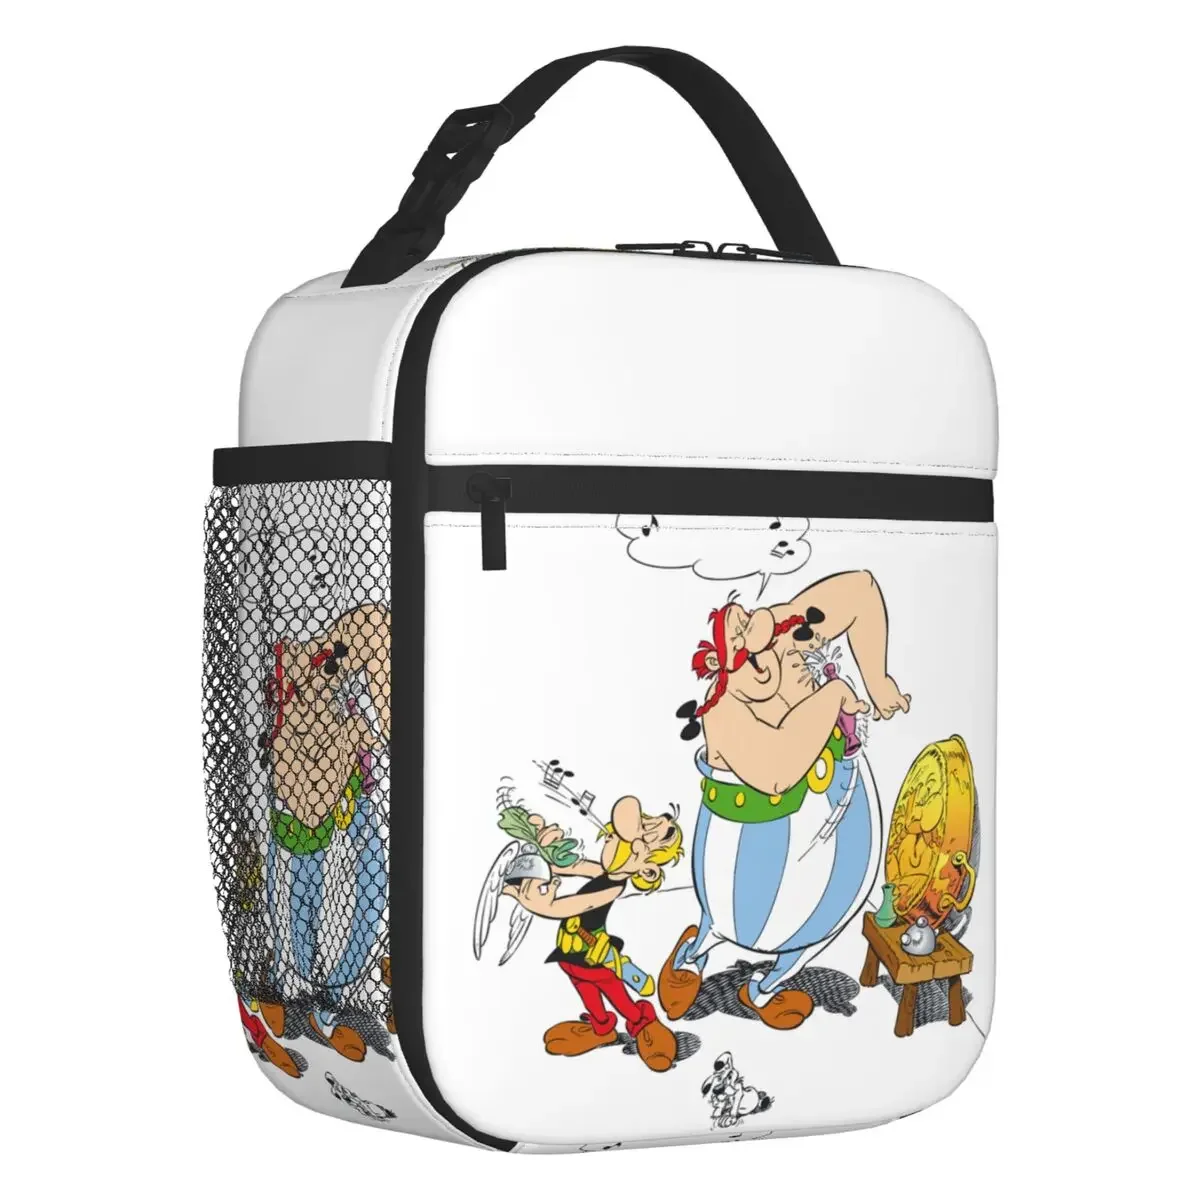 

Многоразовый Ланч-бокс Asterix и Obelix, герметичный, с французским комиксом, Термоизолированный Ланч-бокс для детей и школьников